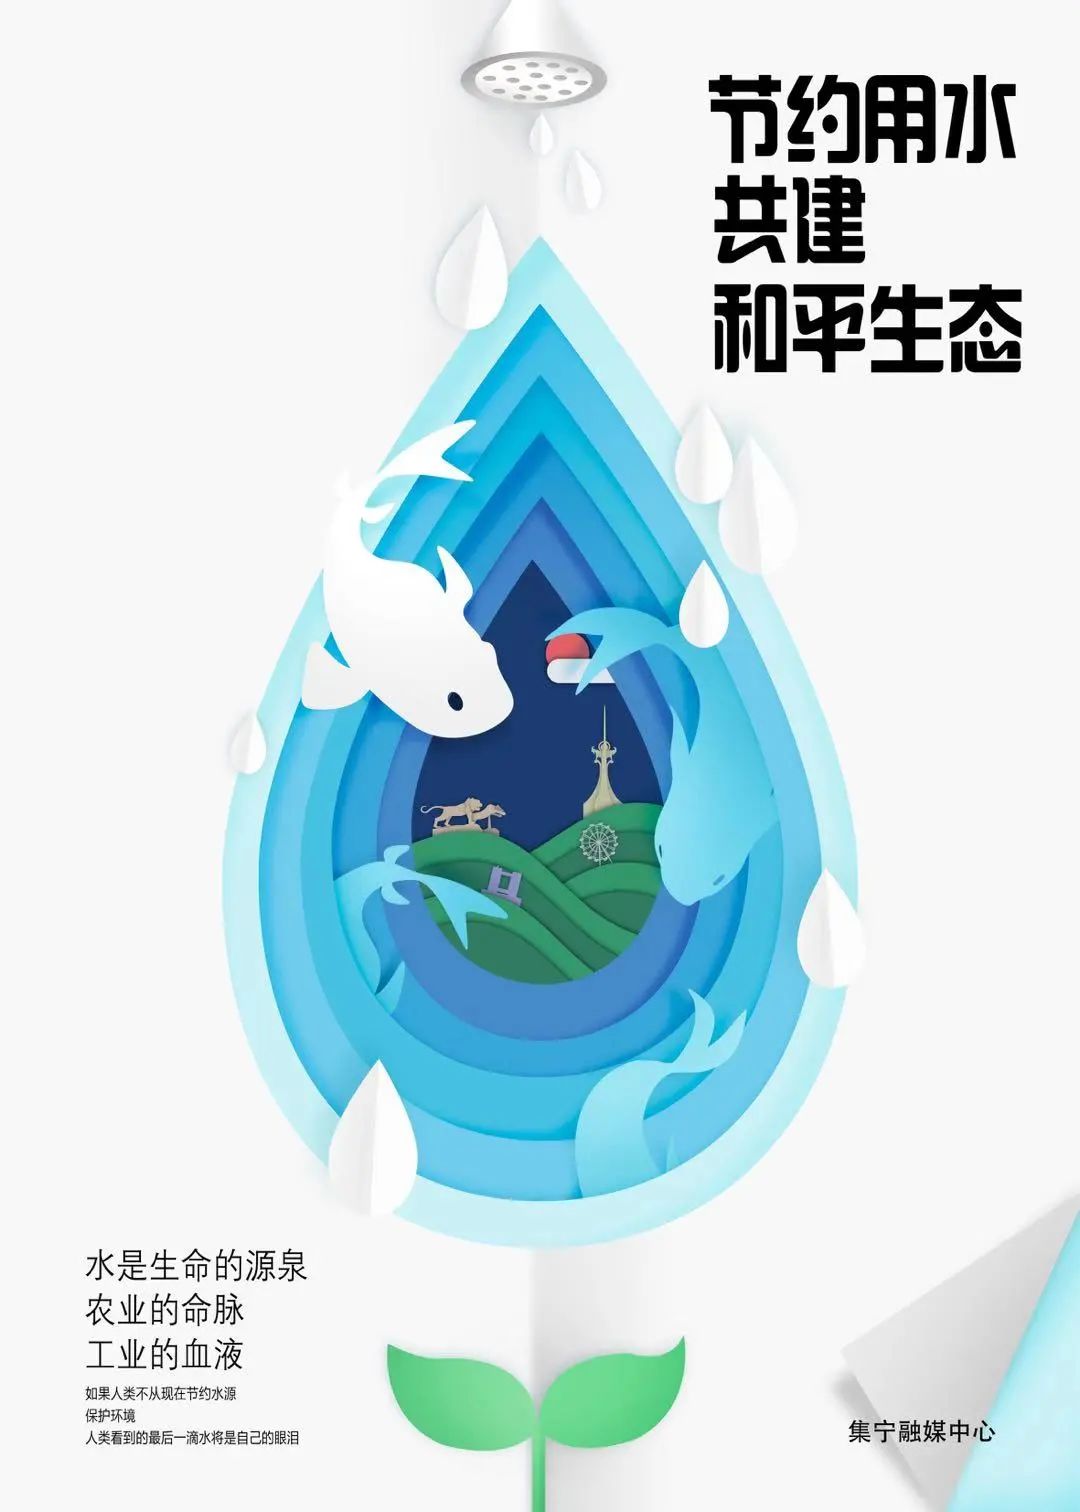 【微公益】集宁区推出原创节约用水公益海报 节约用水 尊重生命